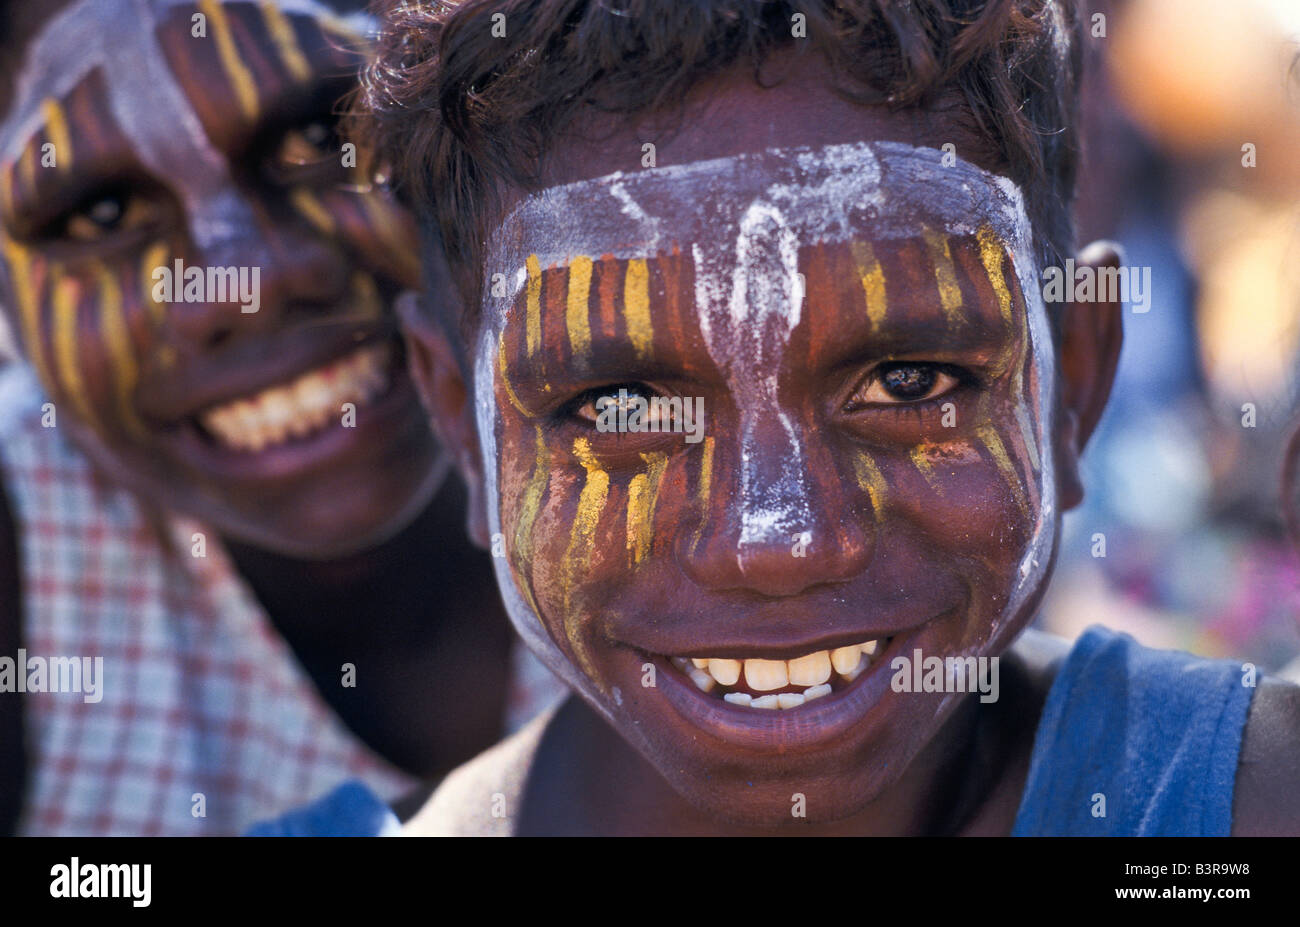 Les enfants autochtones en Australie Banque D'Images